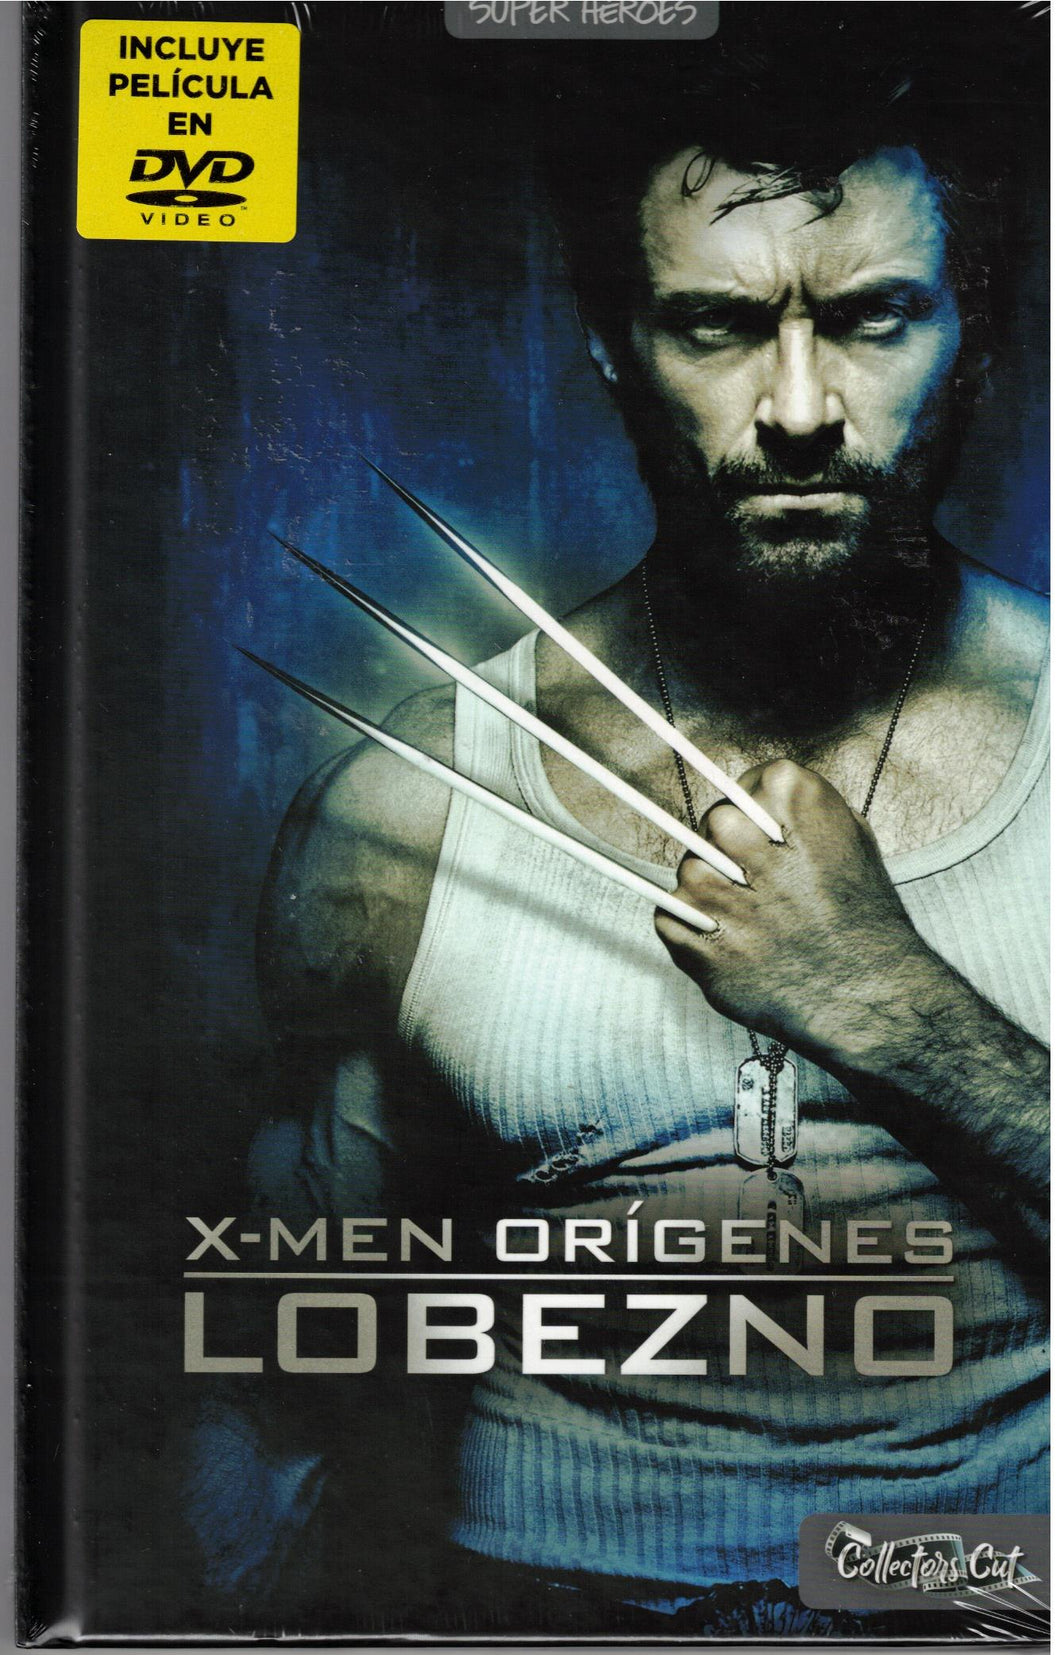 X-Men Origenes Lobezno (Collector's Cut, DVD + Libro 36 pag. Nuevo)